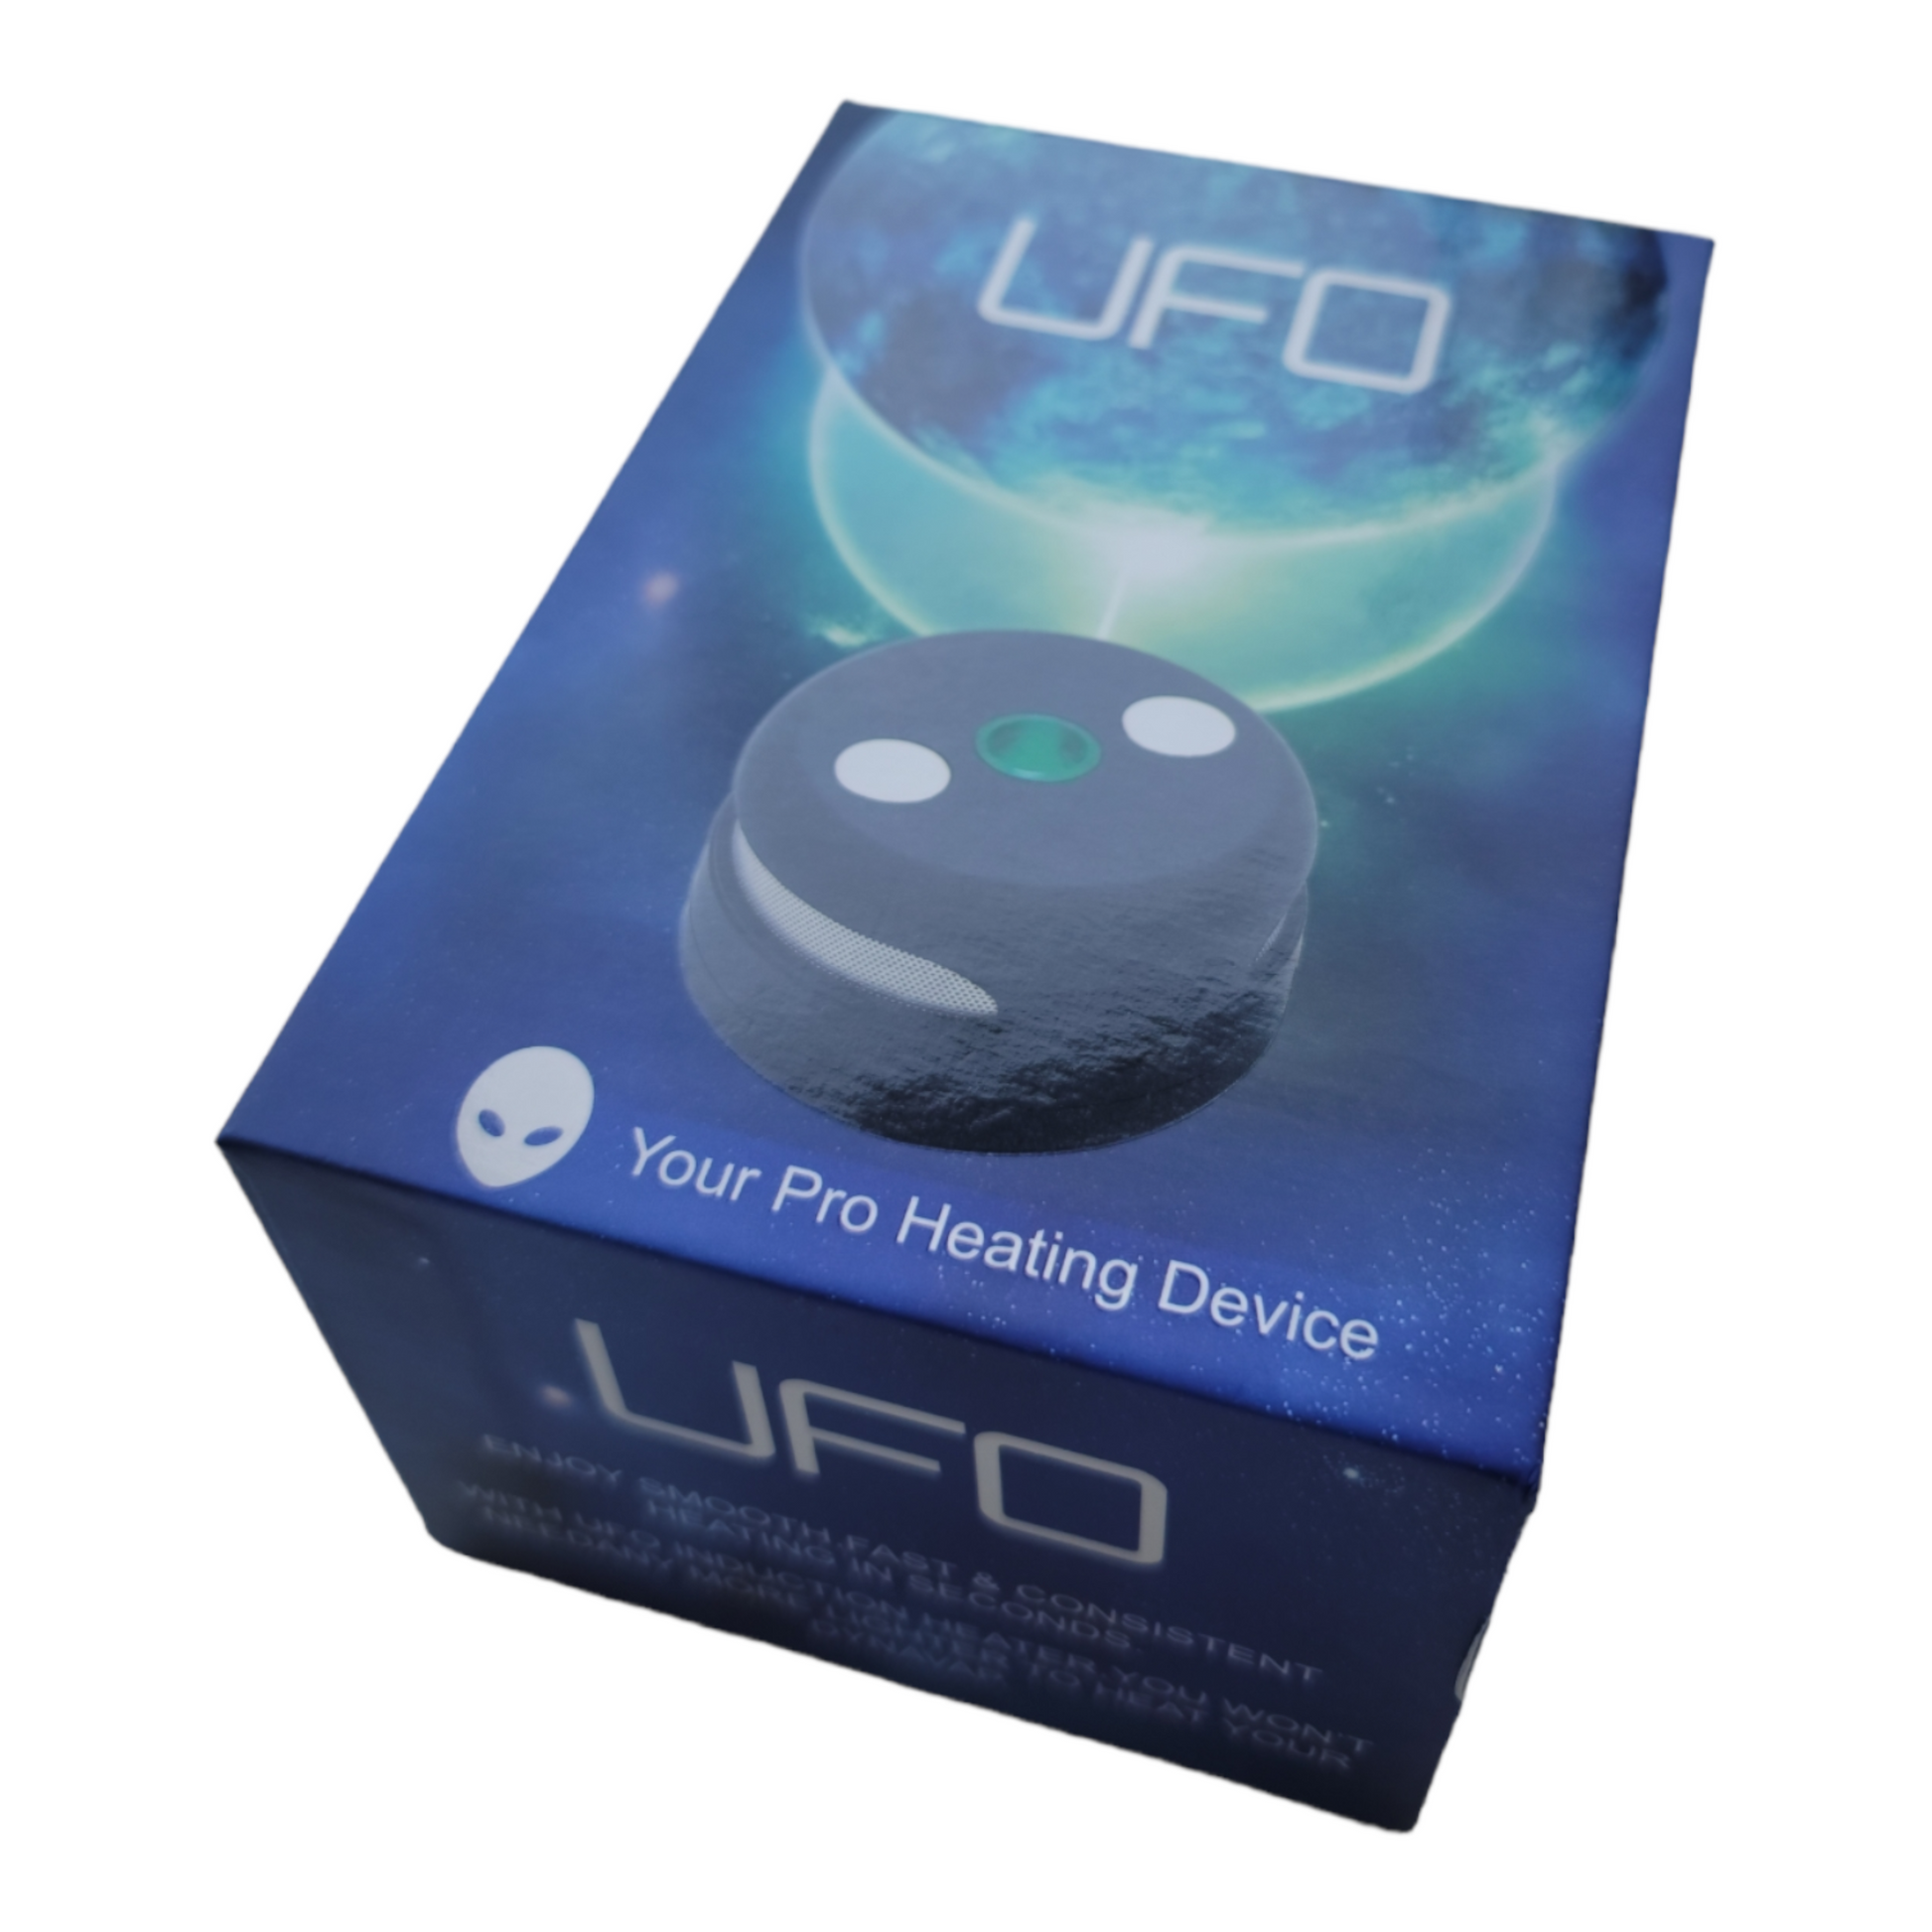 UFO Induction Heater, UFO Portable Induction Heater, UFO Induction Heater UK, UFO Portable Induction Heater UK, DynaVap Induction Heater, DynaVap Induction Heater UK